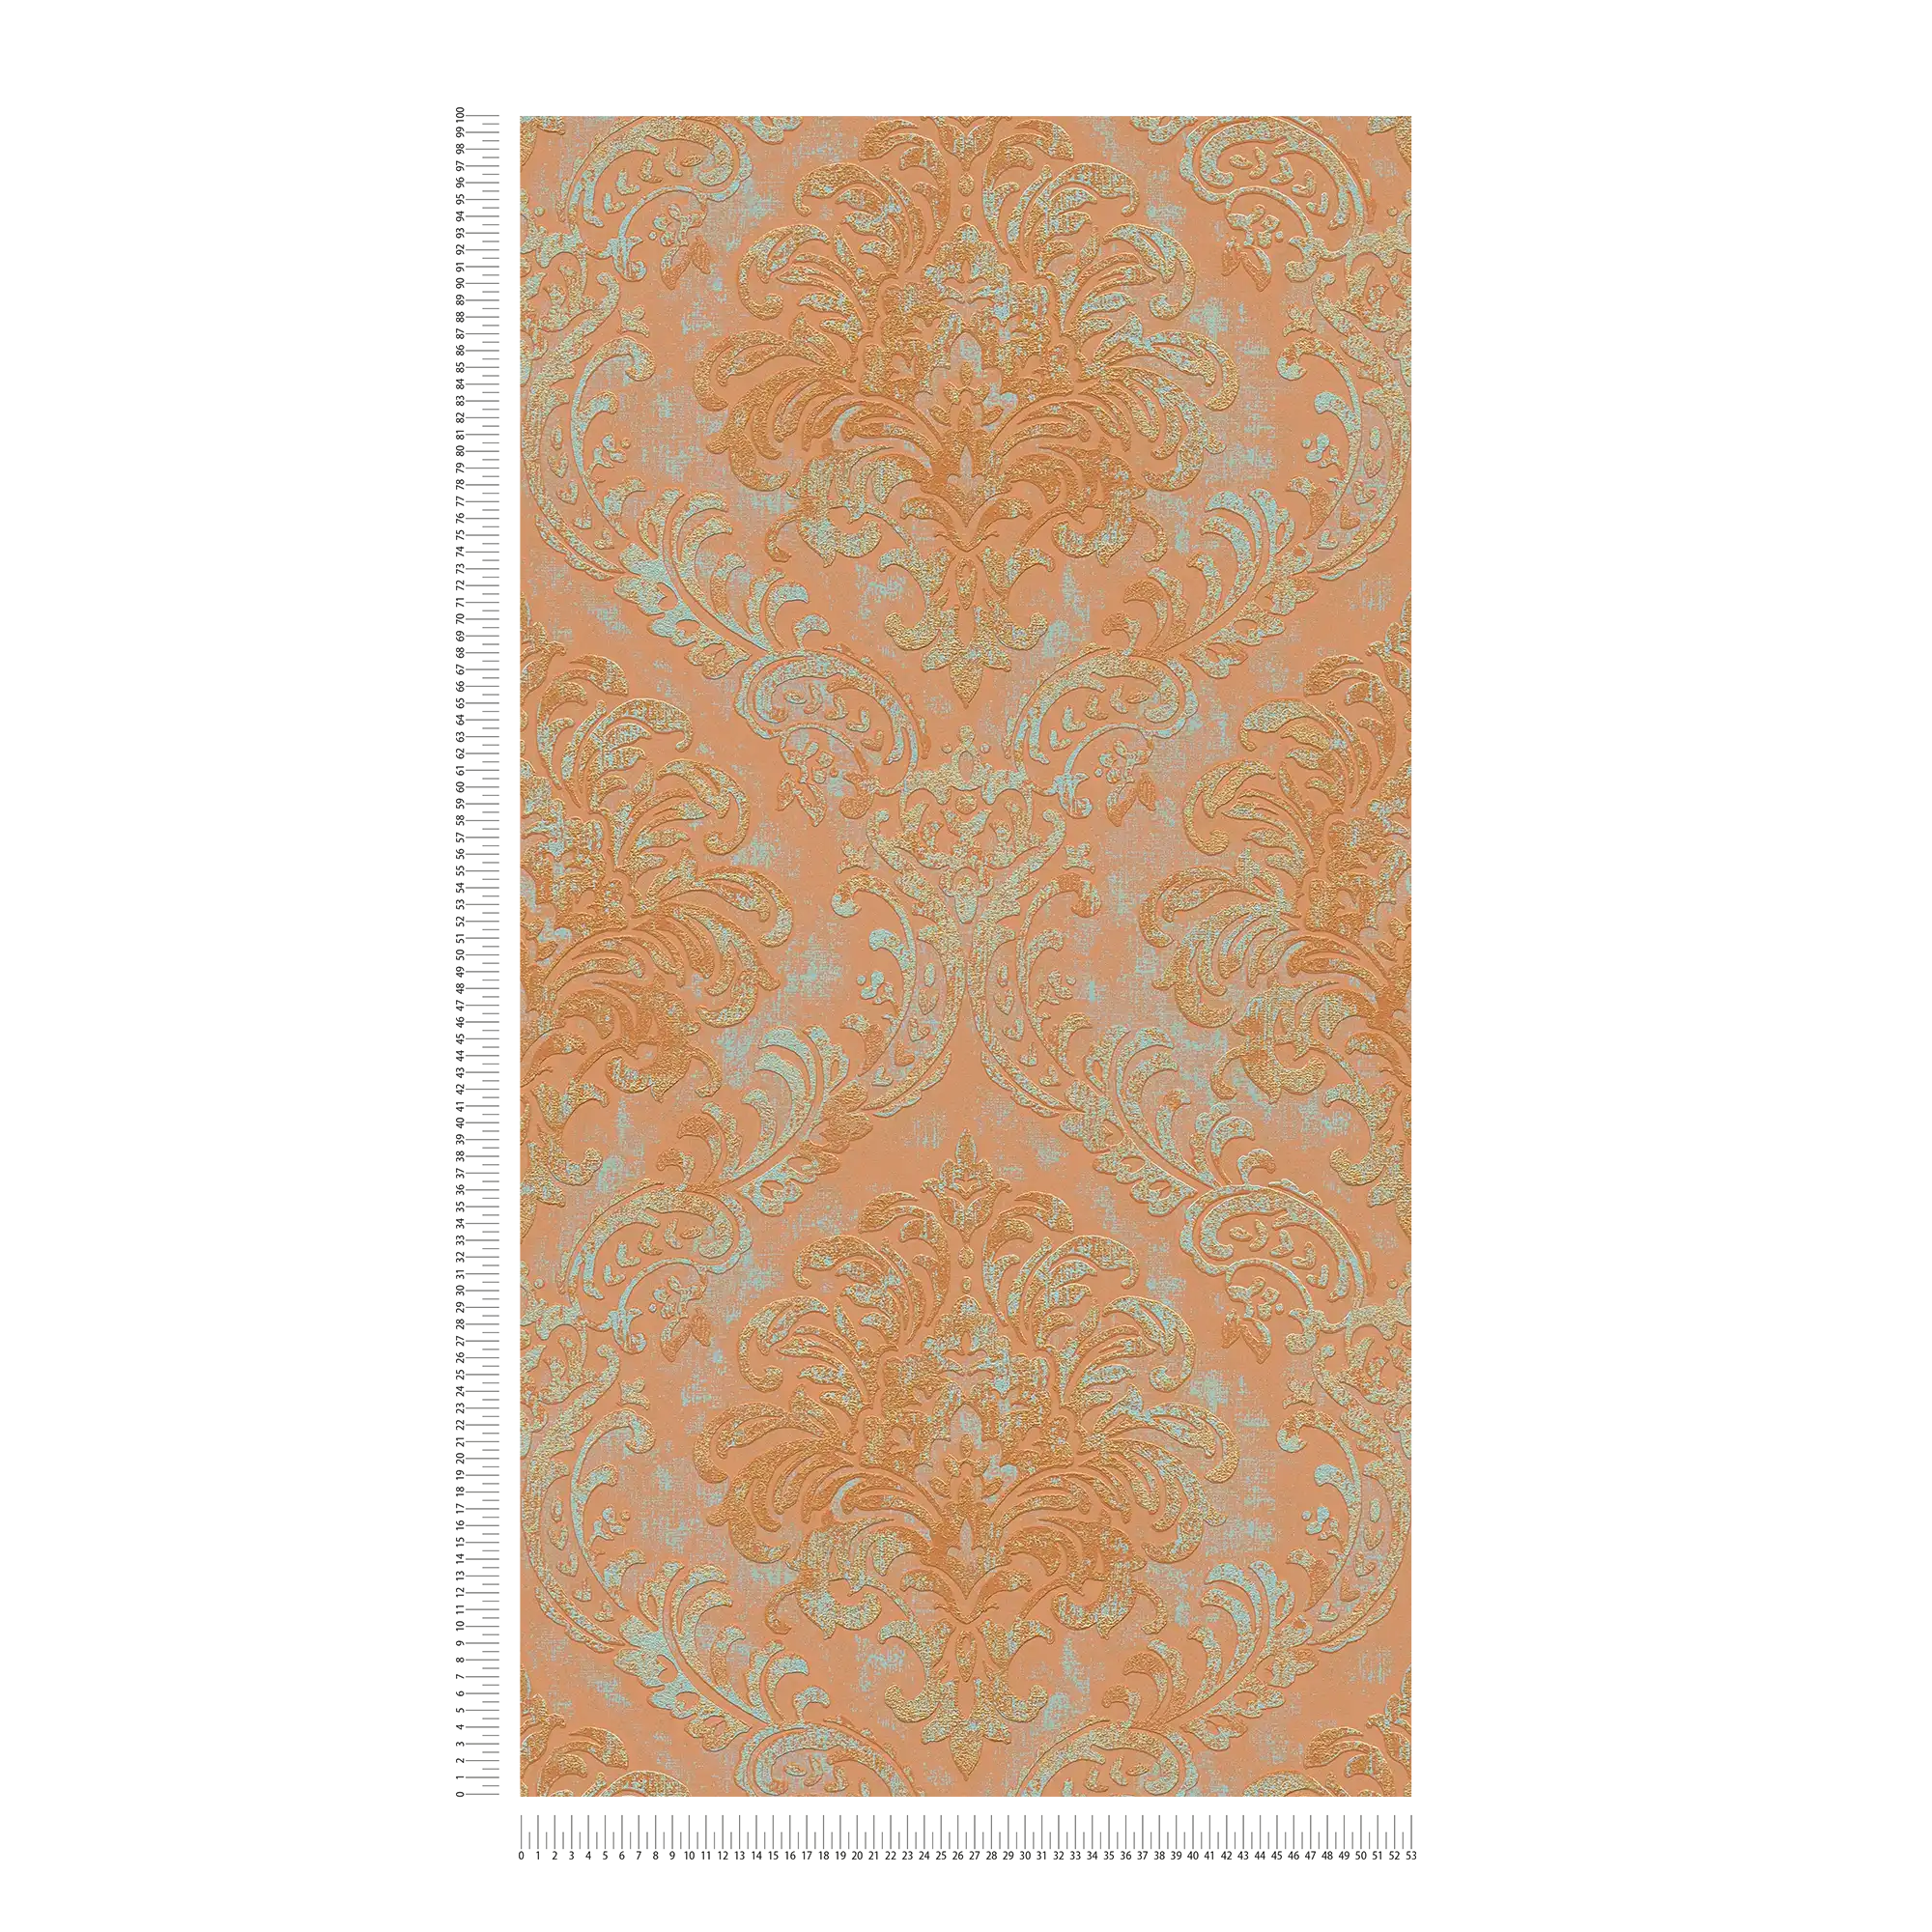             Carta da parati in tessuto non tessuto effetto metallizzato con ornamenti - arancione, rosa, turchese
        